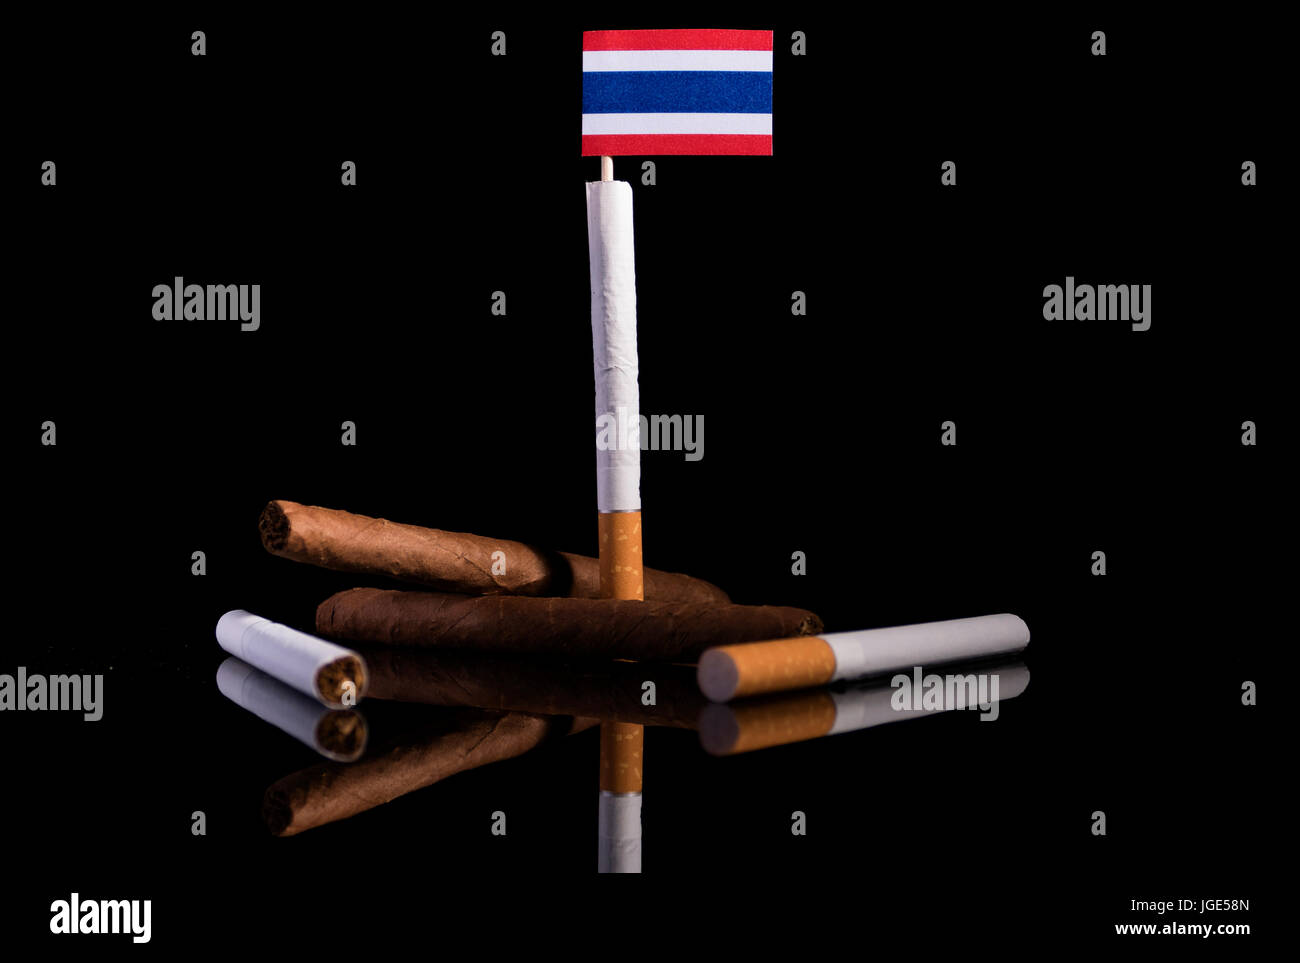 Pavillon thaï avec des cigarettes et cigares. Concept de l'industrie du tabac. Banque D'Images